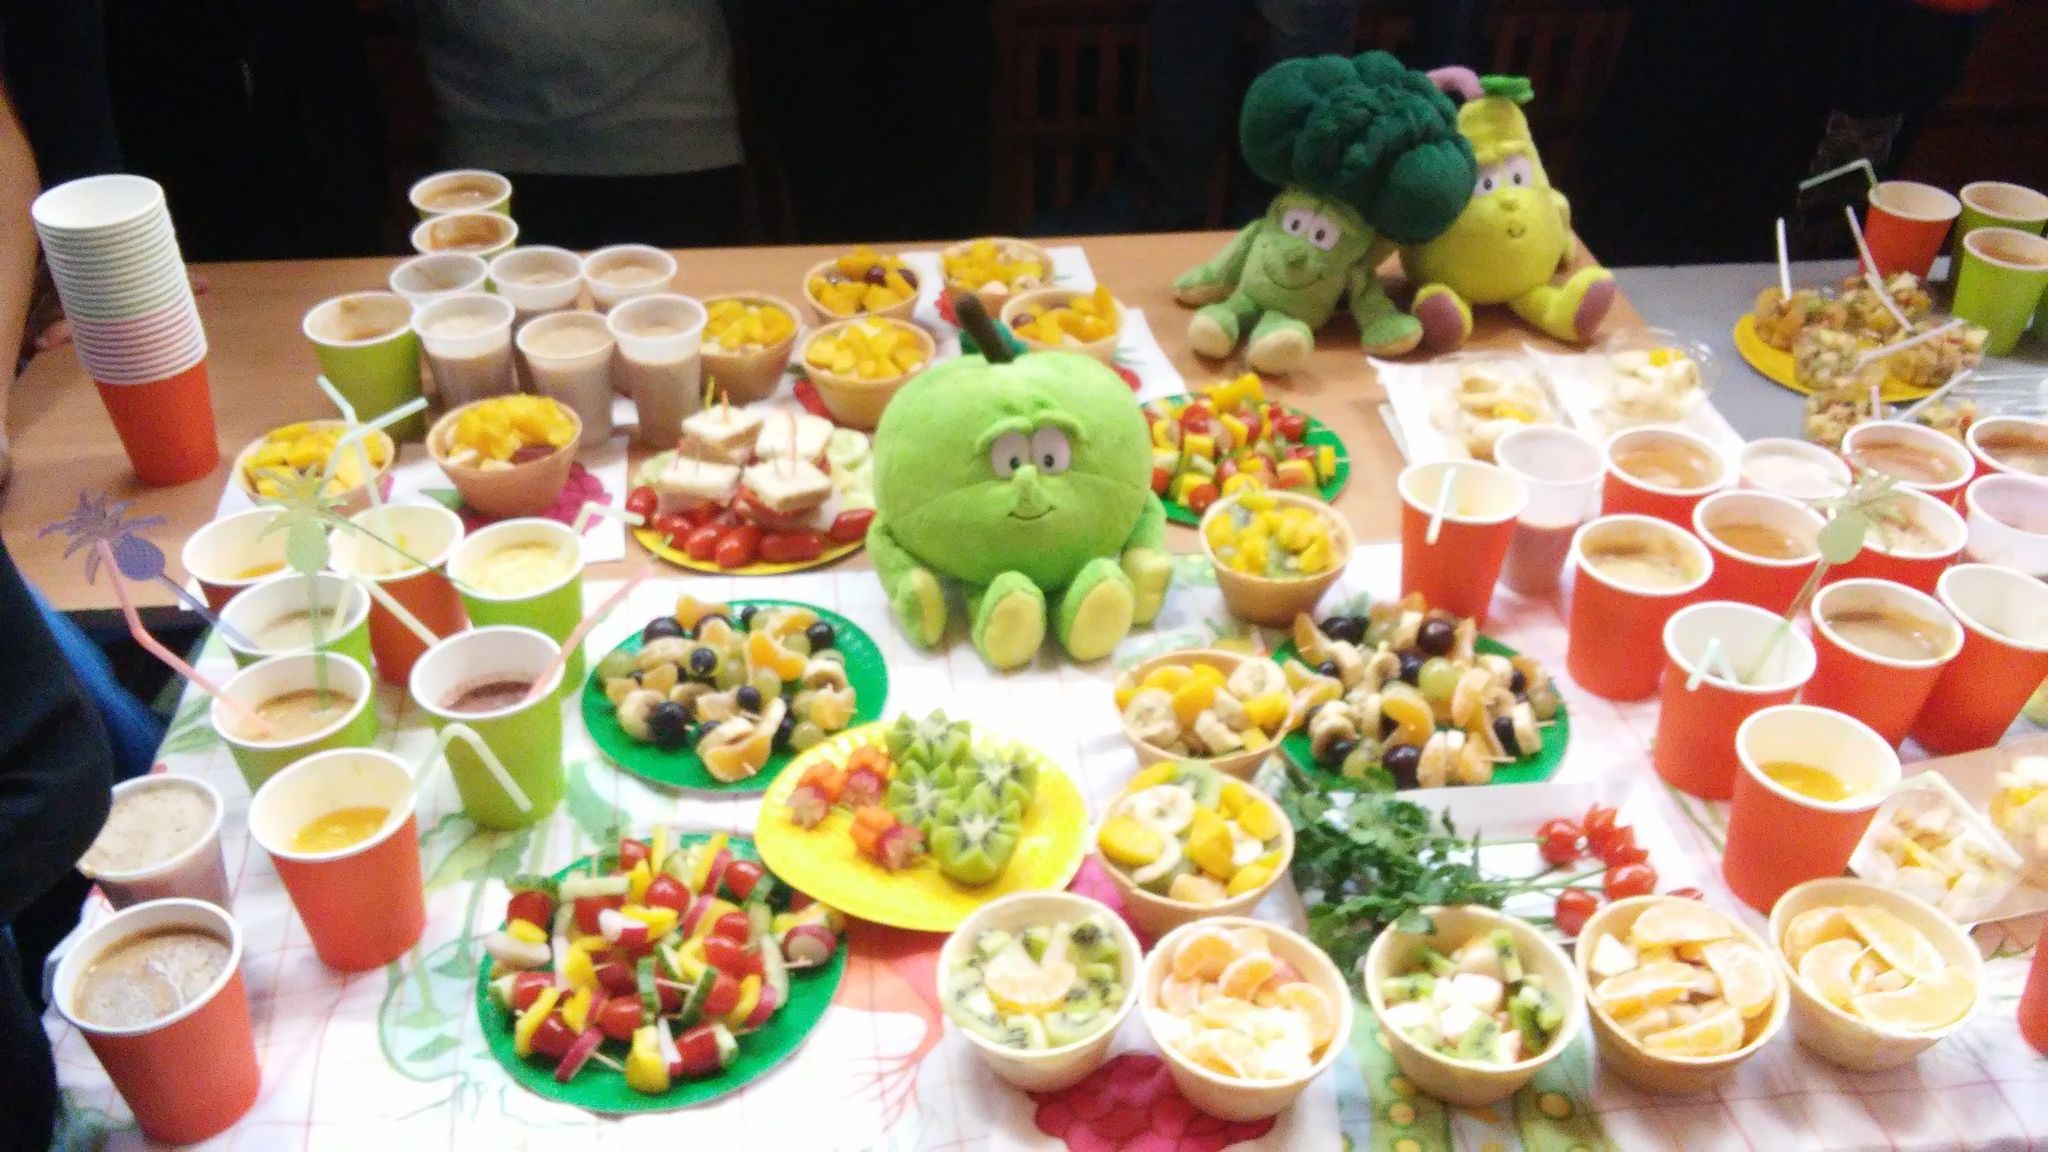 stół ze zdrowym posiłkiem - warzywa, owoce itp.